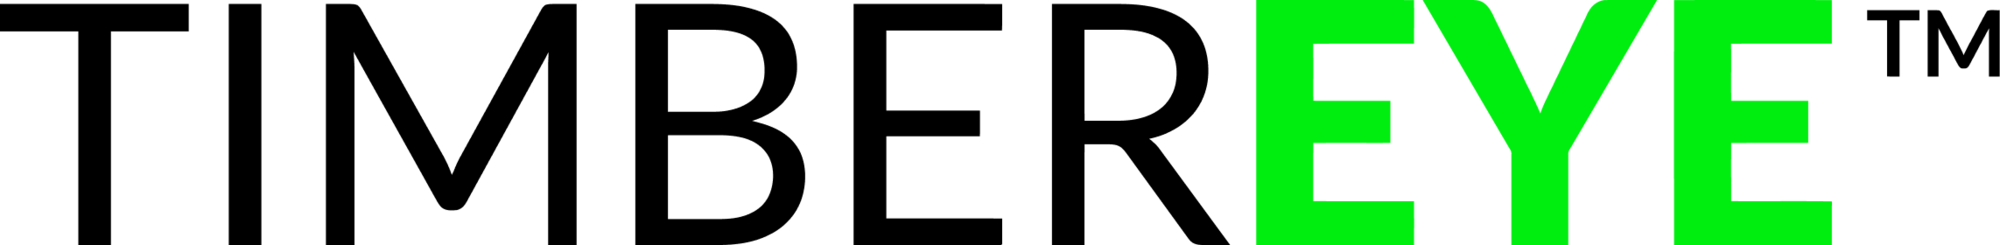 TimberEye logo